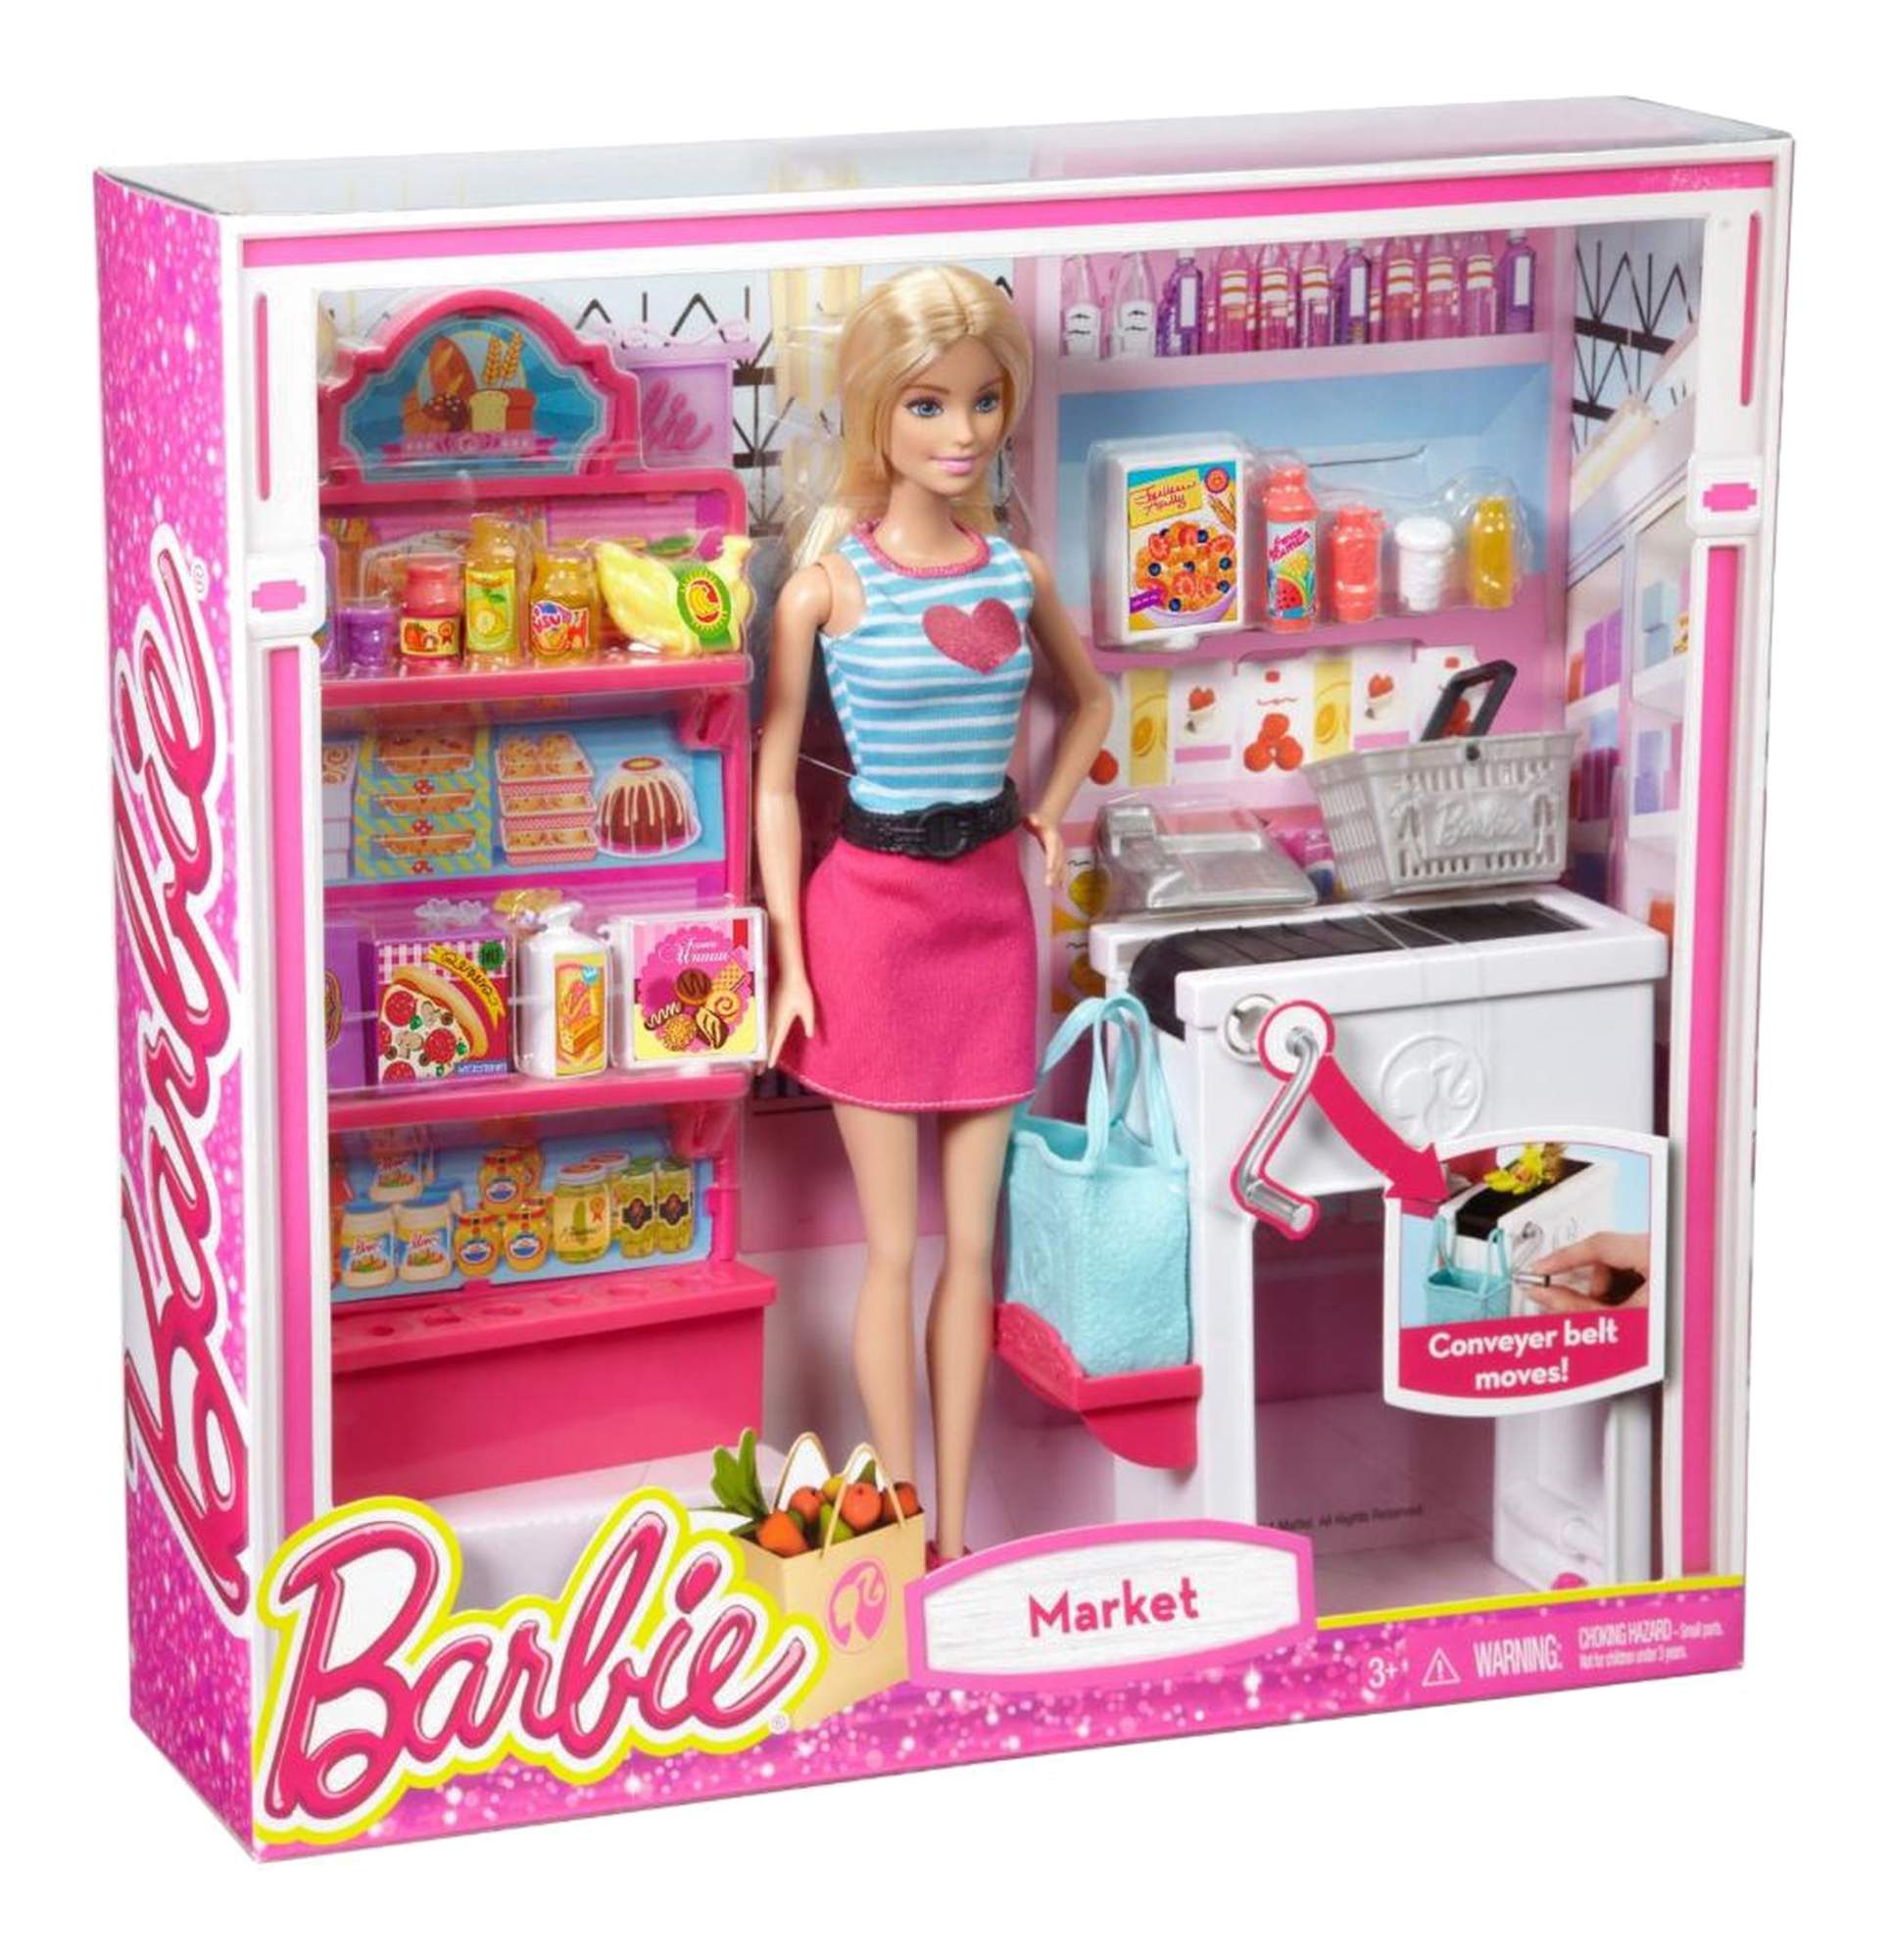 Игрушки набор куклы. Набор Barbie продуктовый магазин Малибу, 29 см, ckp77. Кукла Барби Mattel супермаркет.